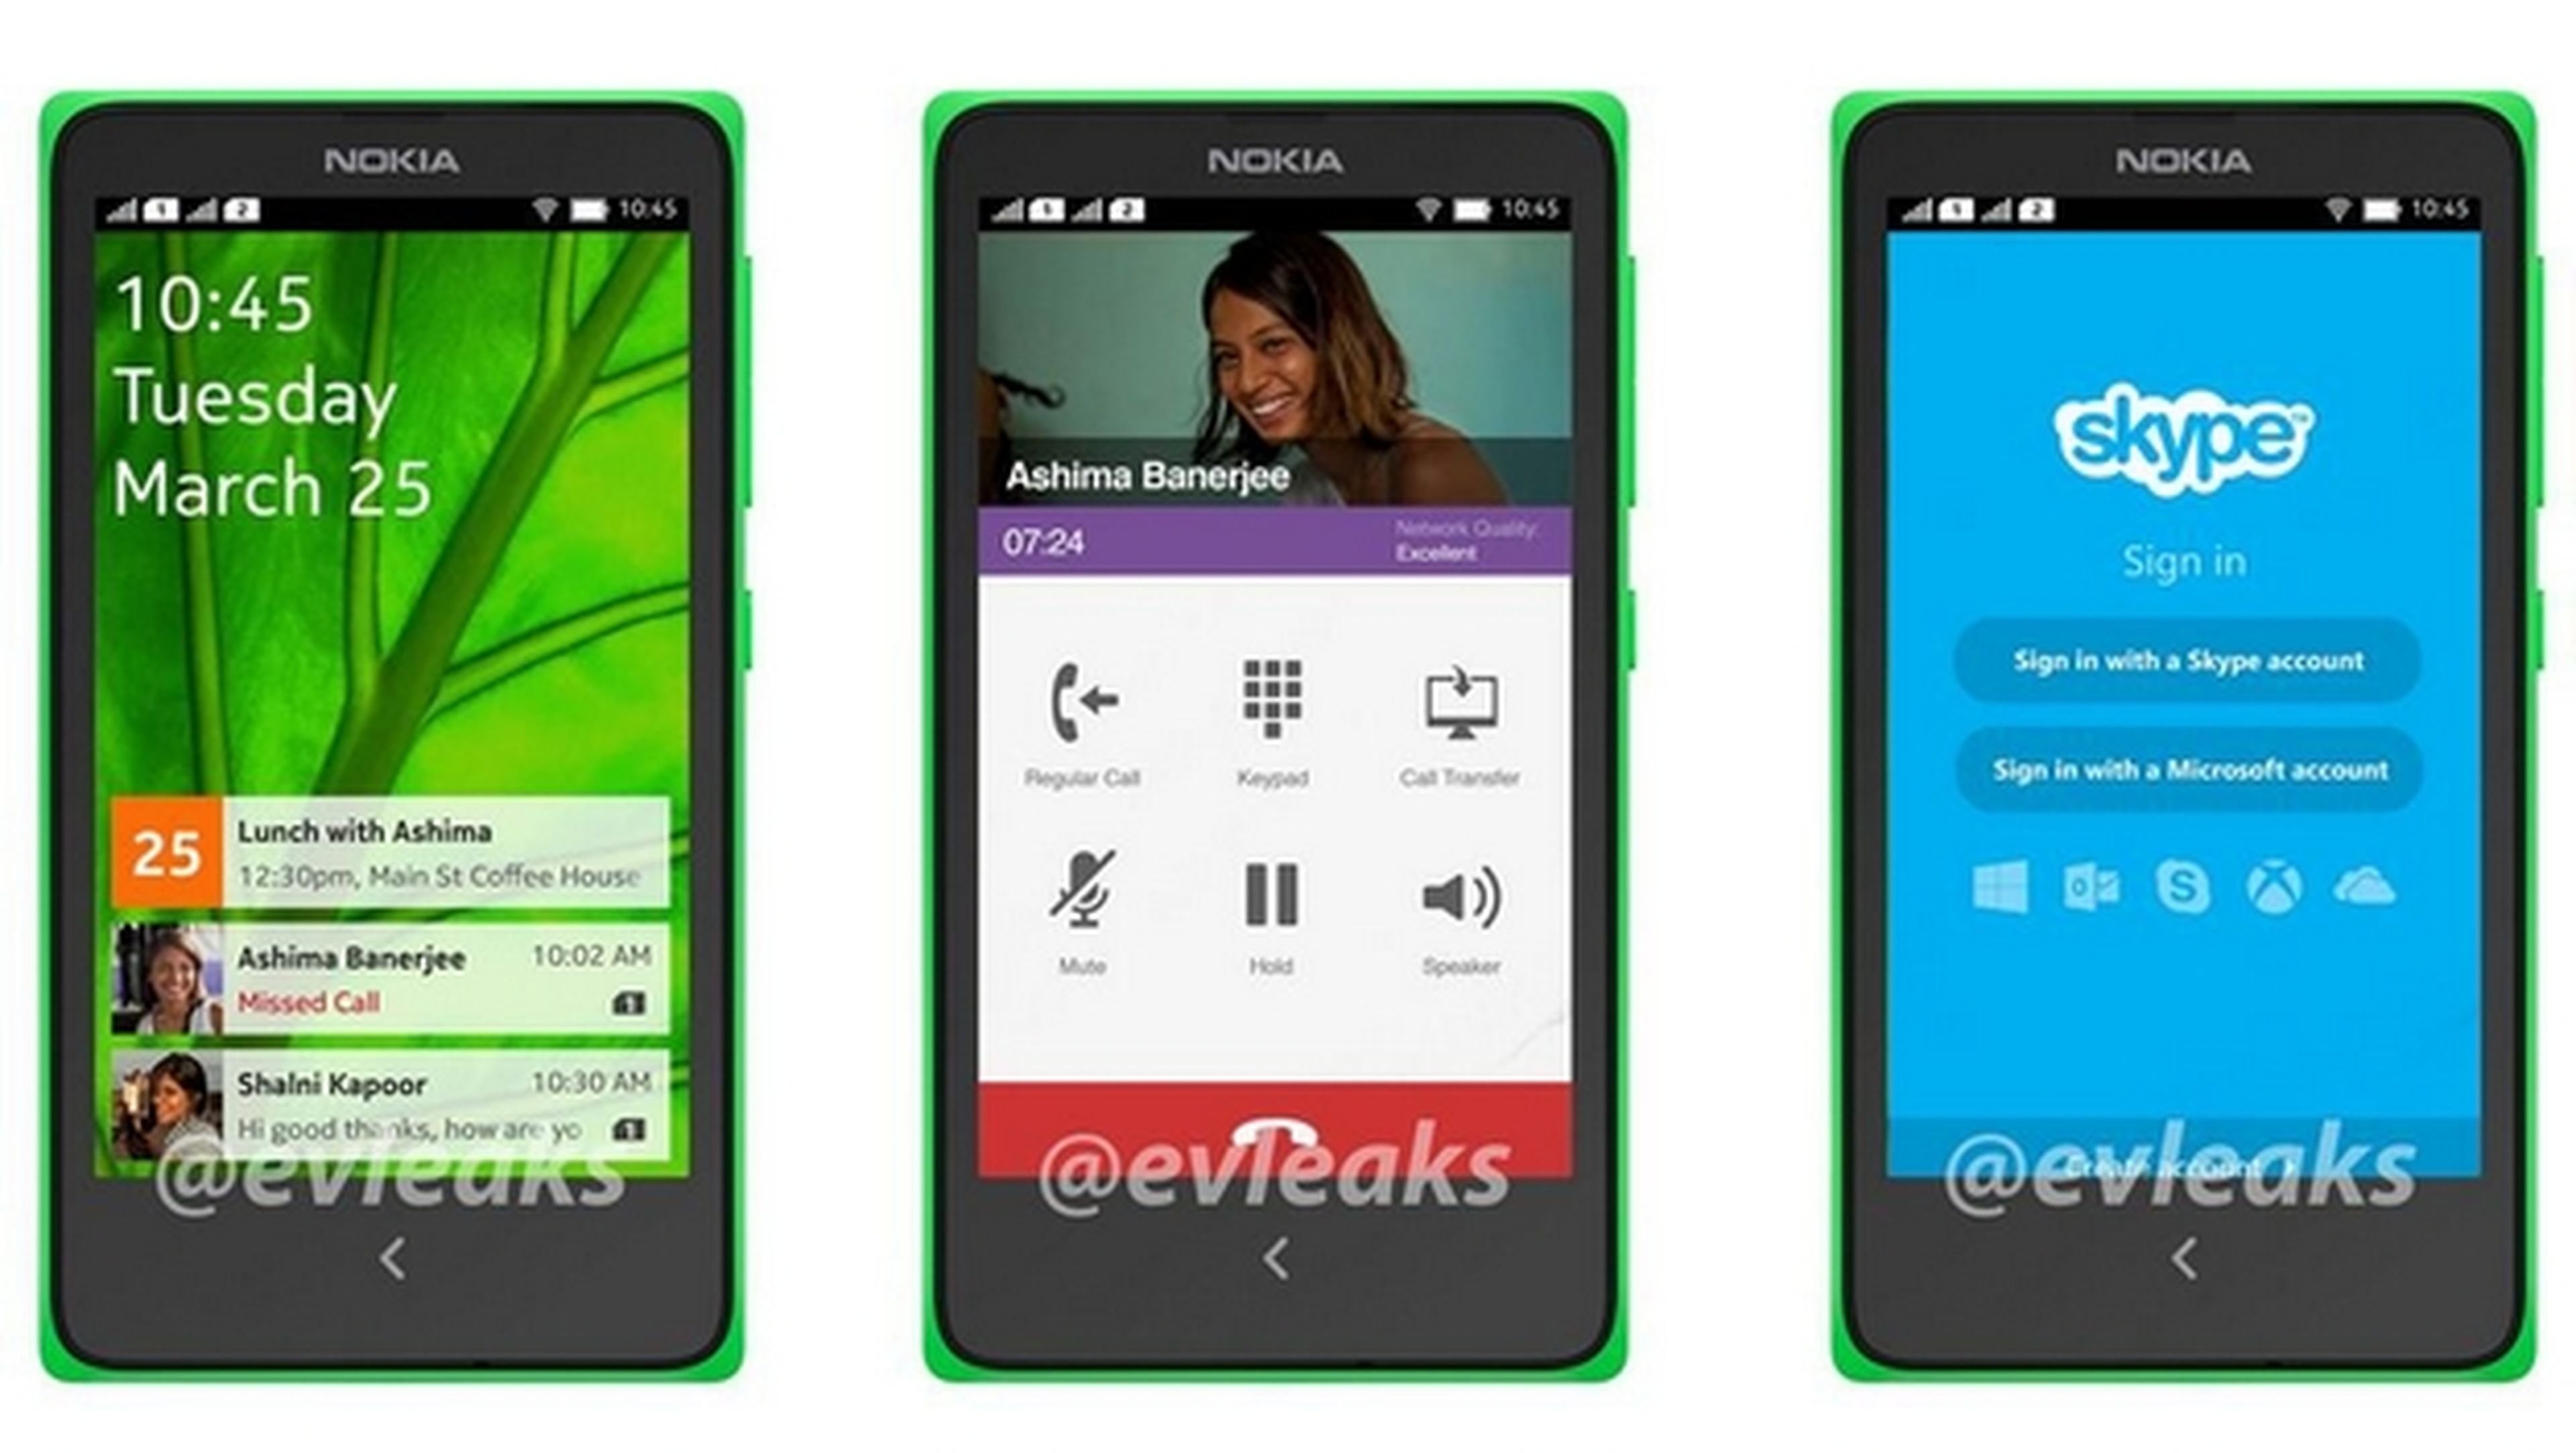 Primera imagen de la interfaz del Nokia Normandy, el primer smartphone Nokia con Android